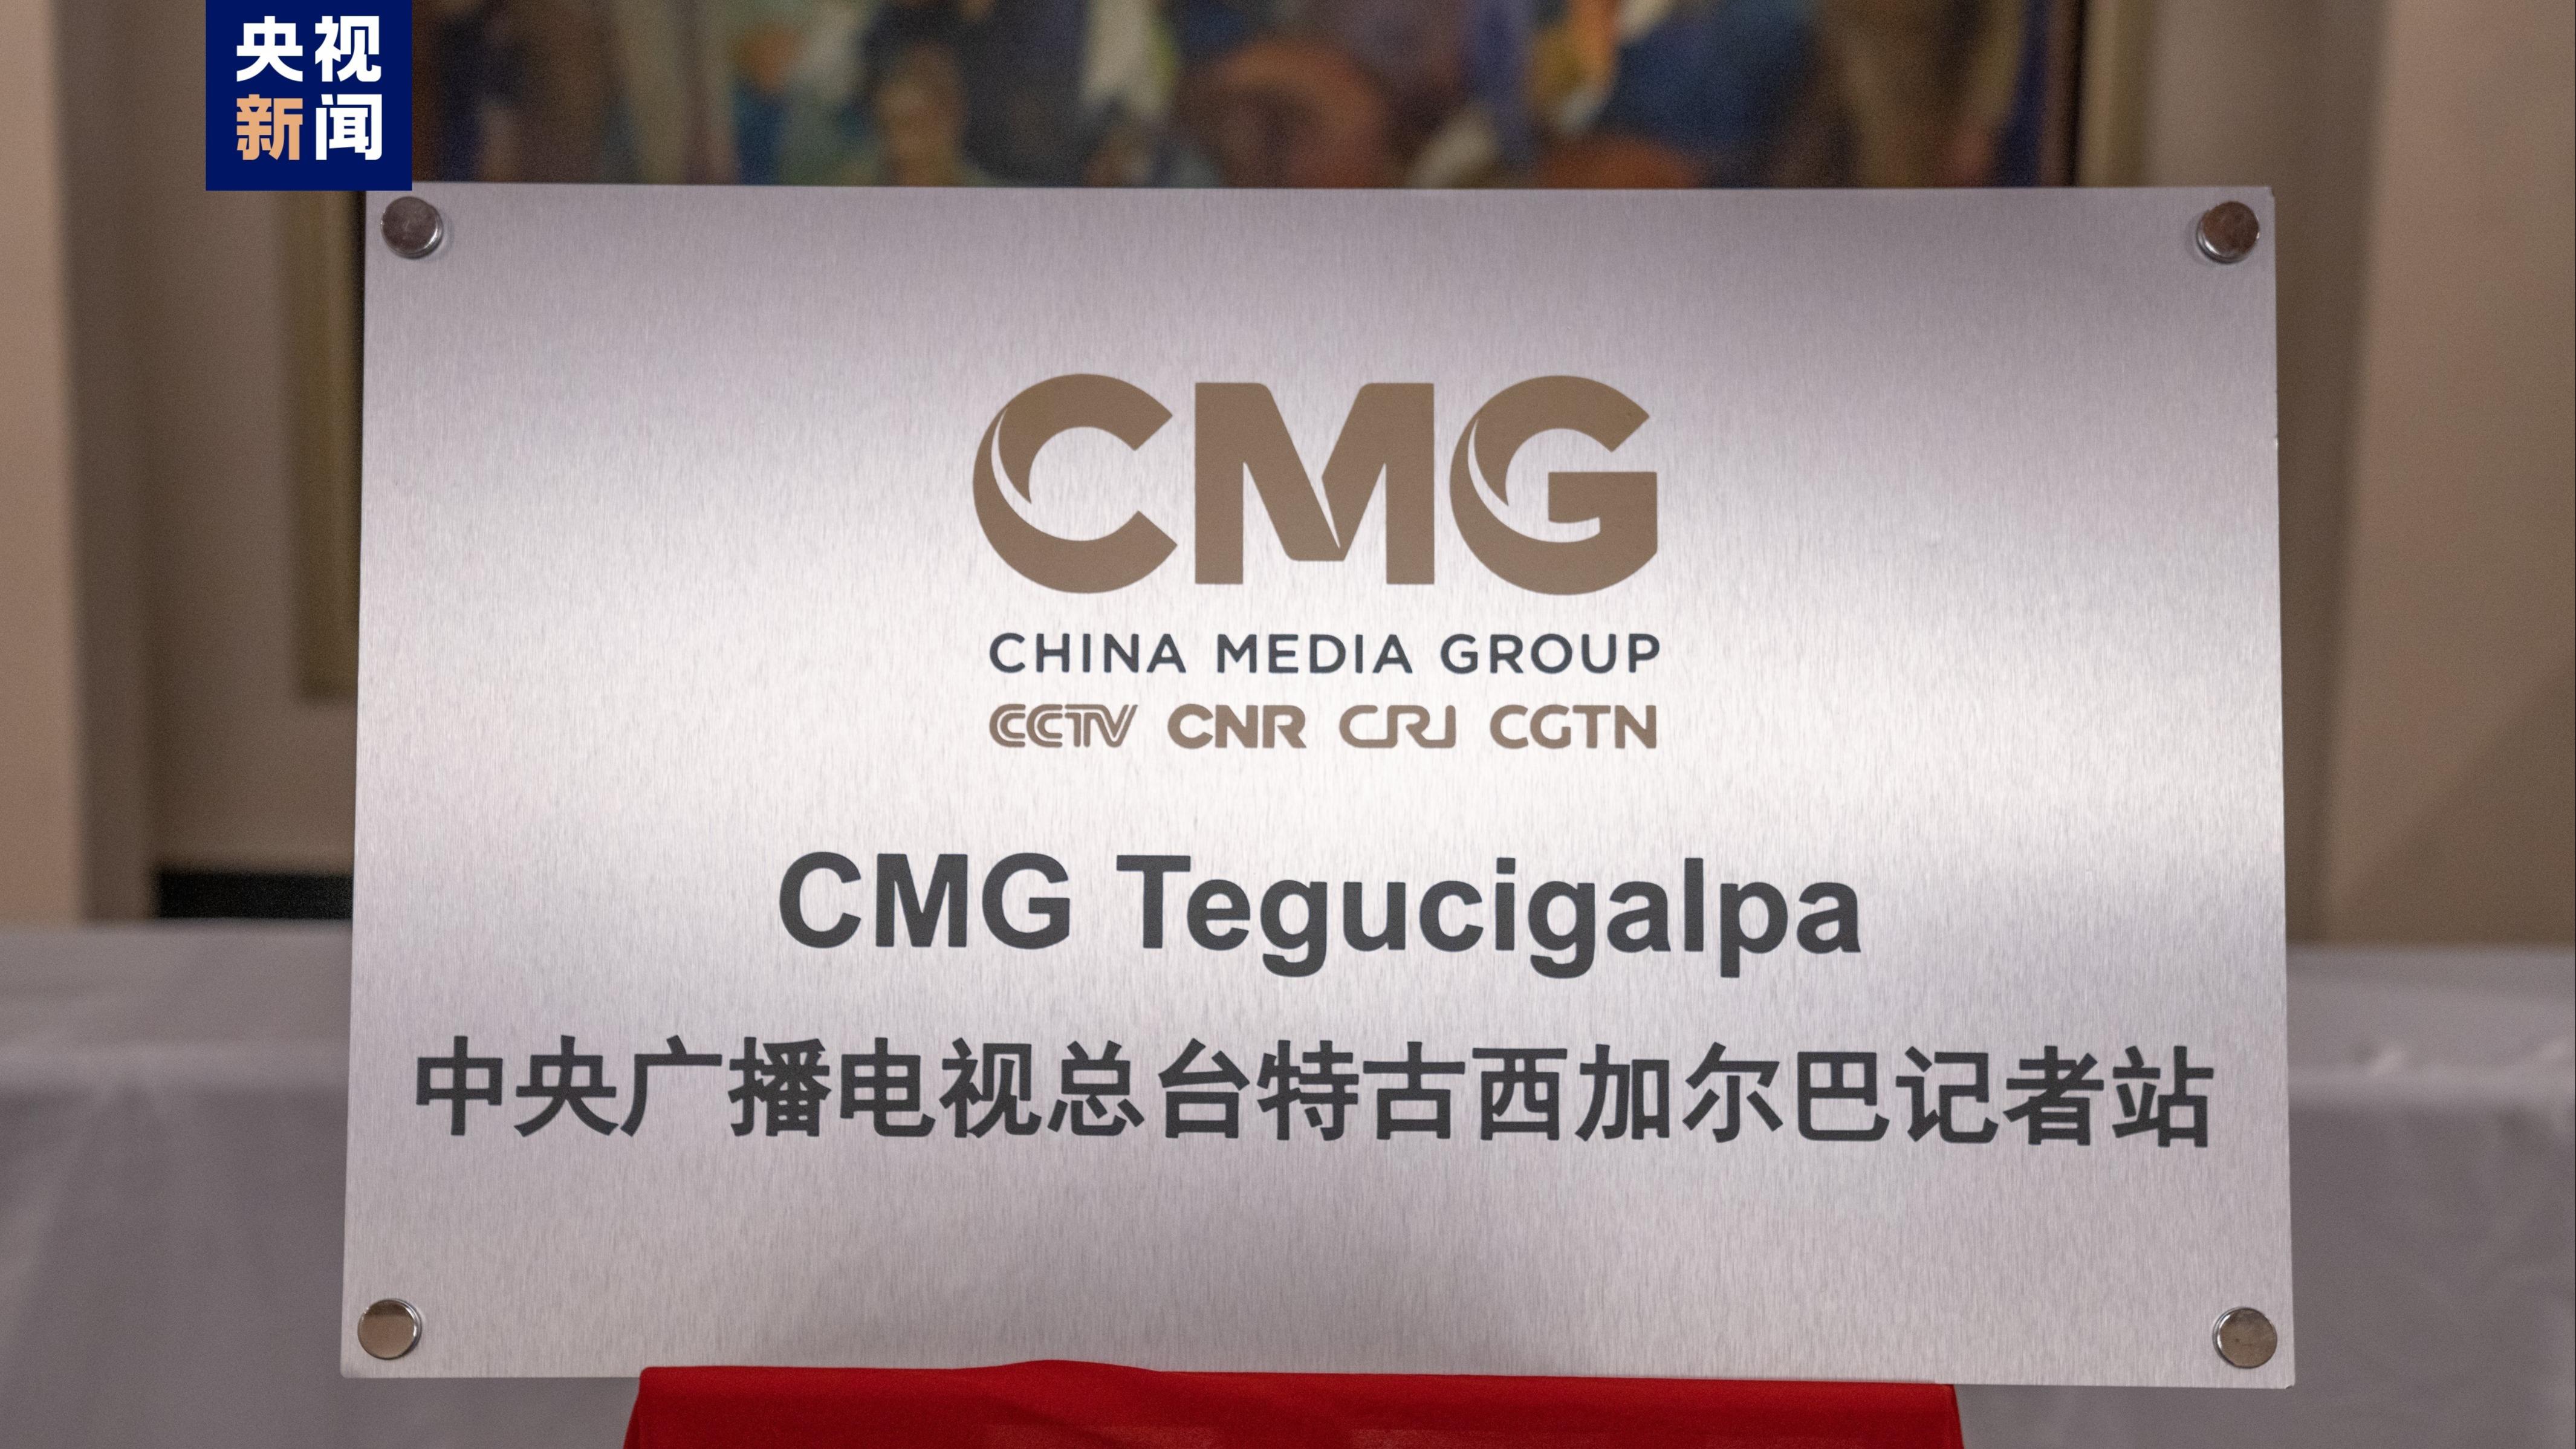 افتتاح ایستگاه خبری رادیو و تلویزیون مرکزی چین در تگوسیگالپای هندوراسا